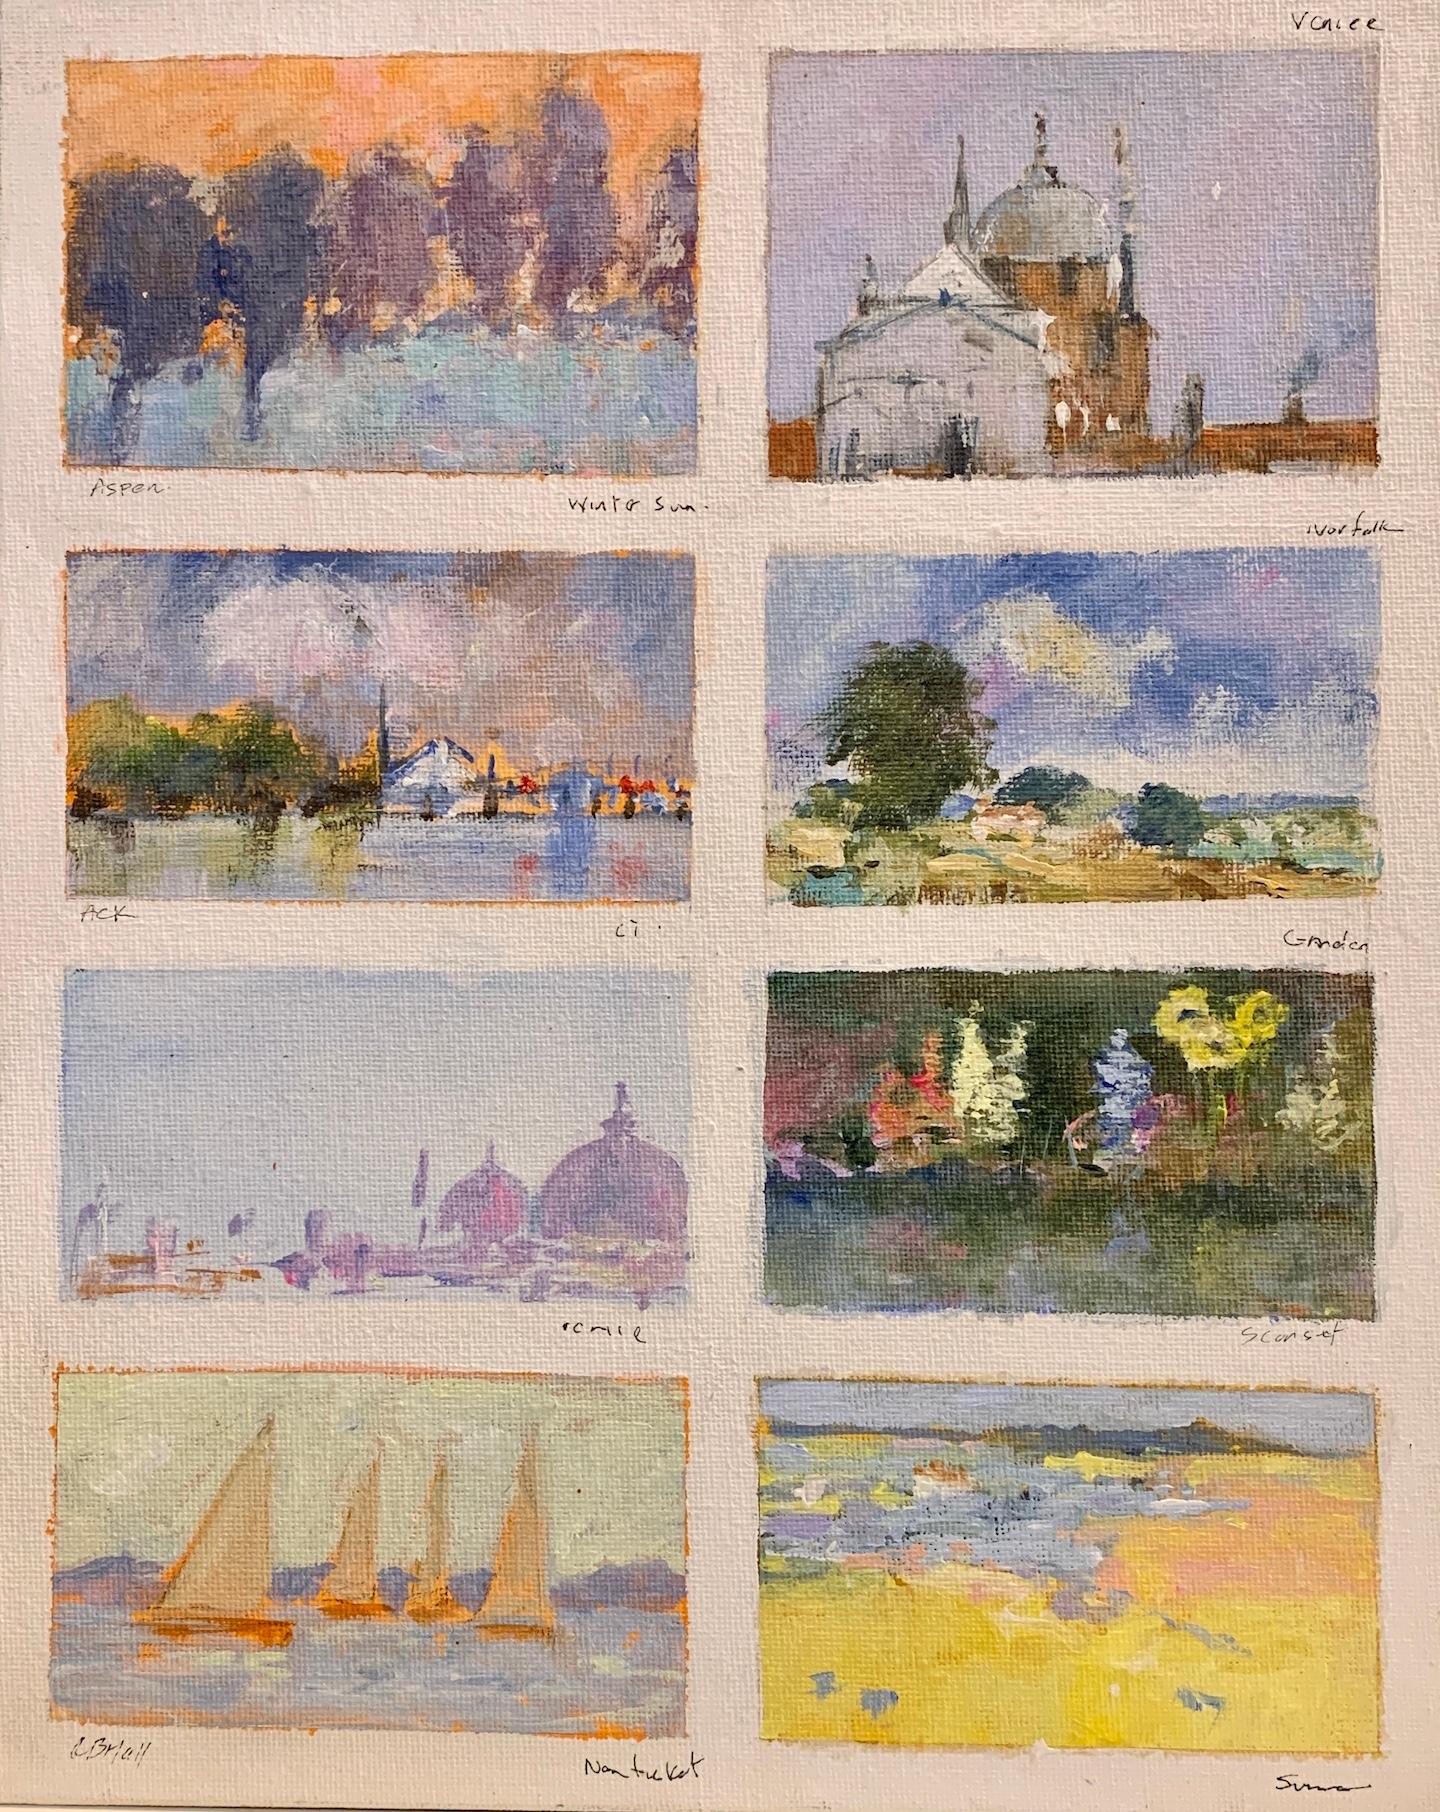 Amerikanische impressionistische Skizze des amerikanischen Impressionismus aus Aspen, Nantucket, Venedig, Sconset, Norfolk